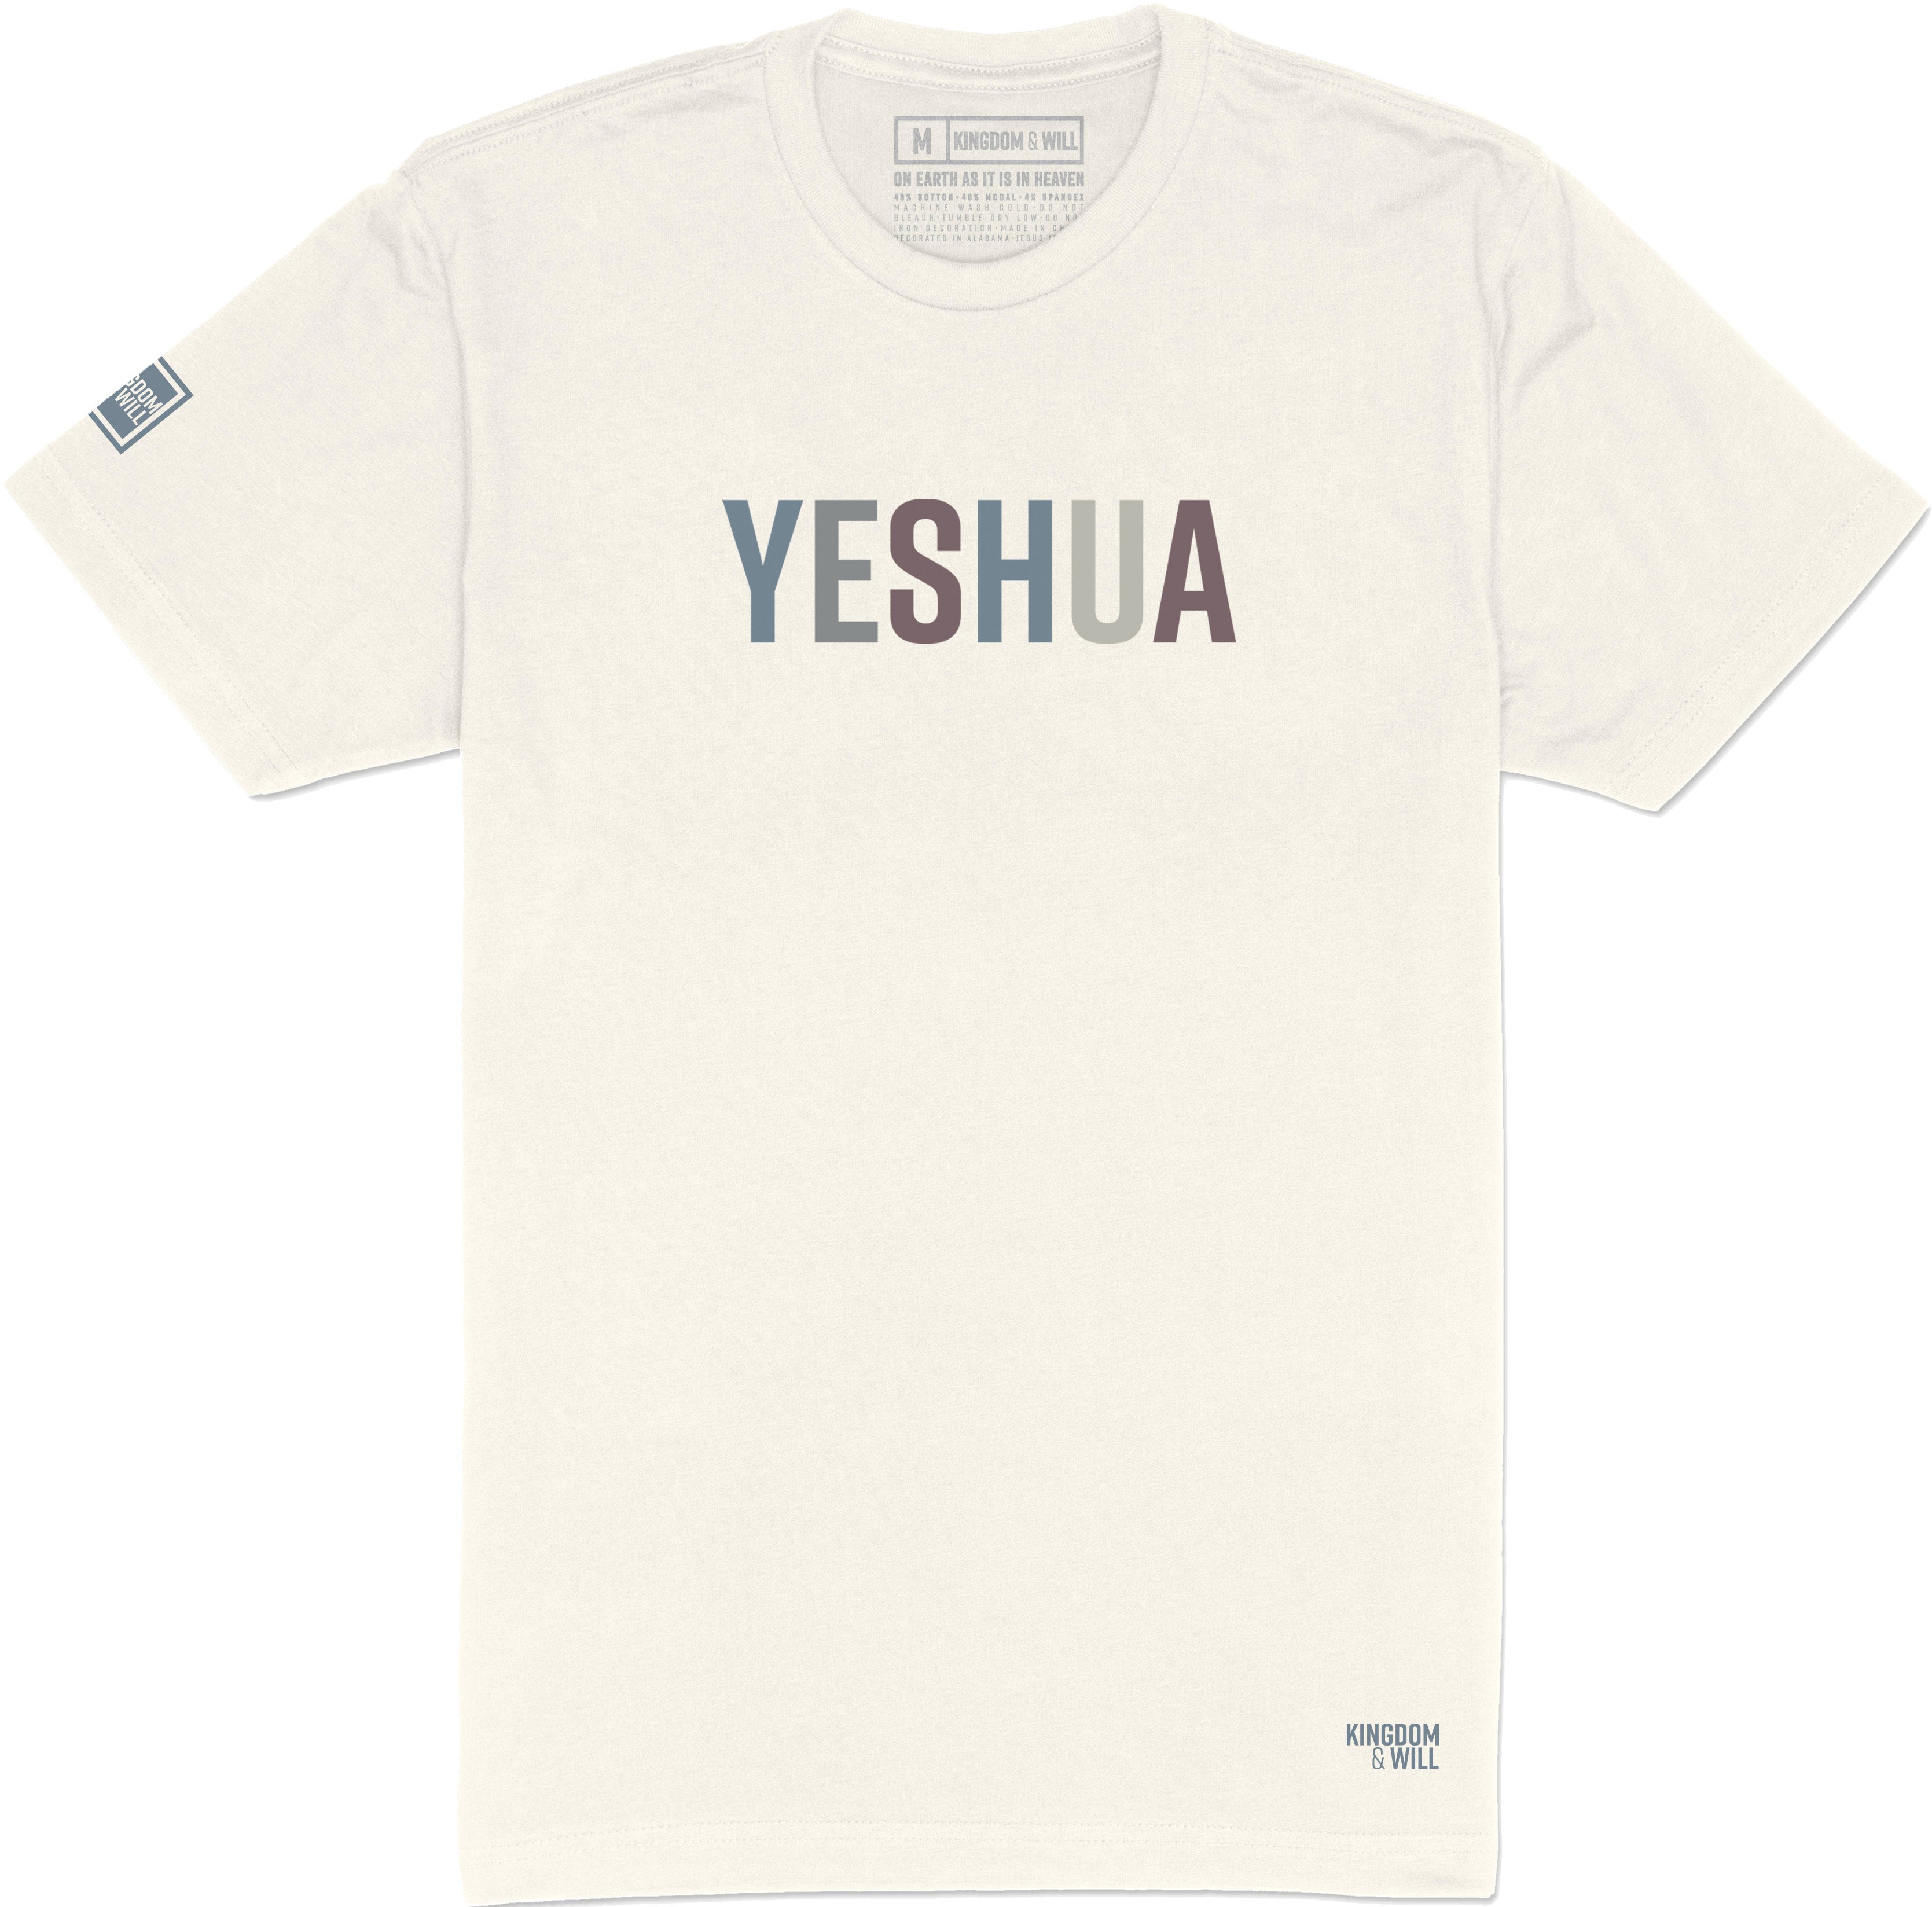 Yeshua T-Shirt (Bone & Multi-Grain) - Kingdom & Will